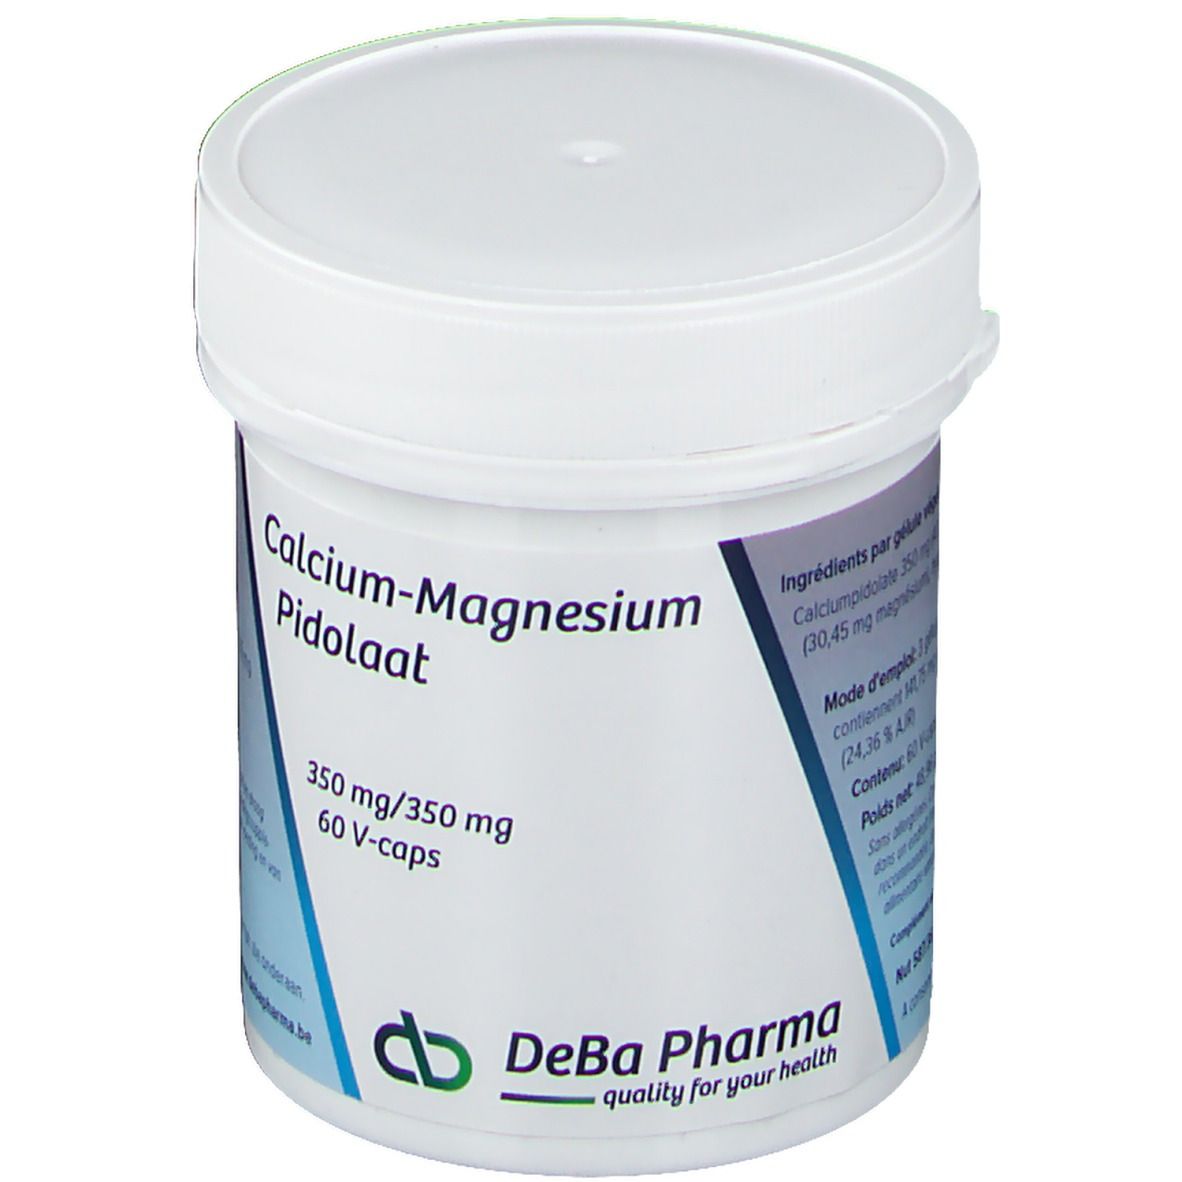 Deba Pilodate de calcium magnésium 350/350 mg